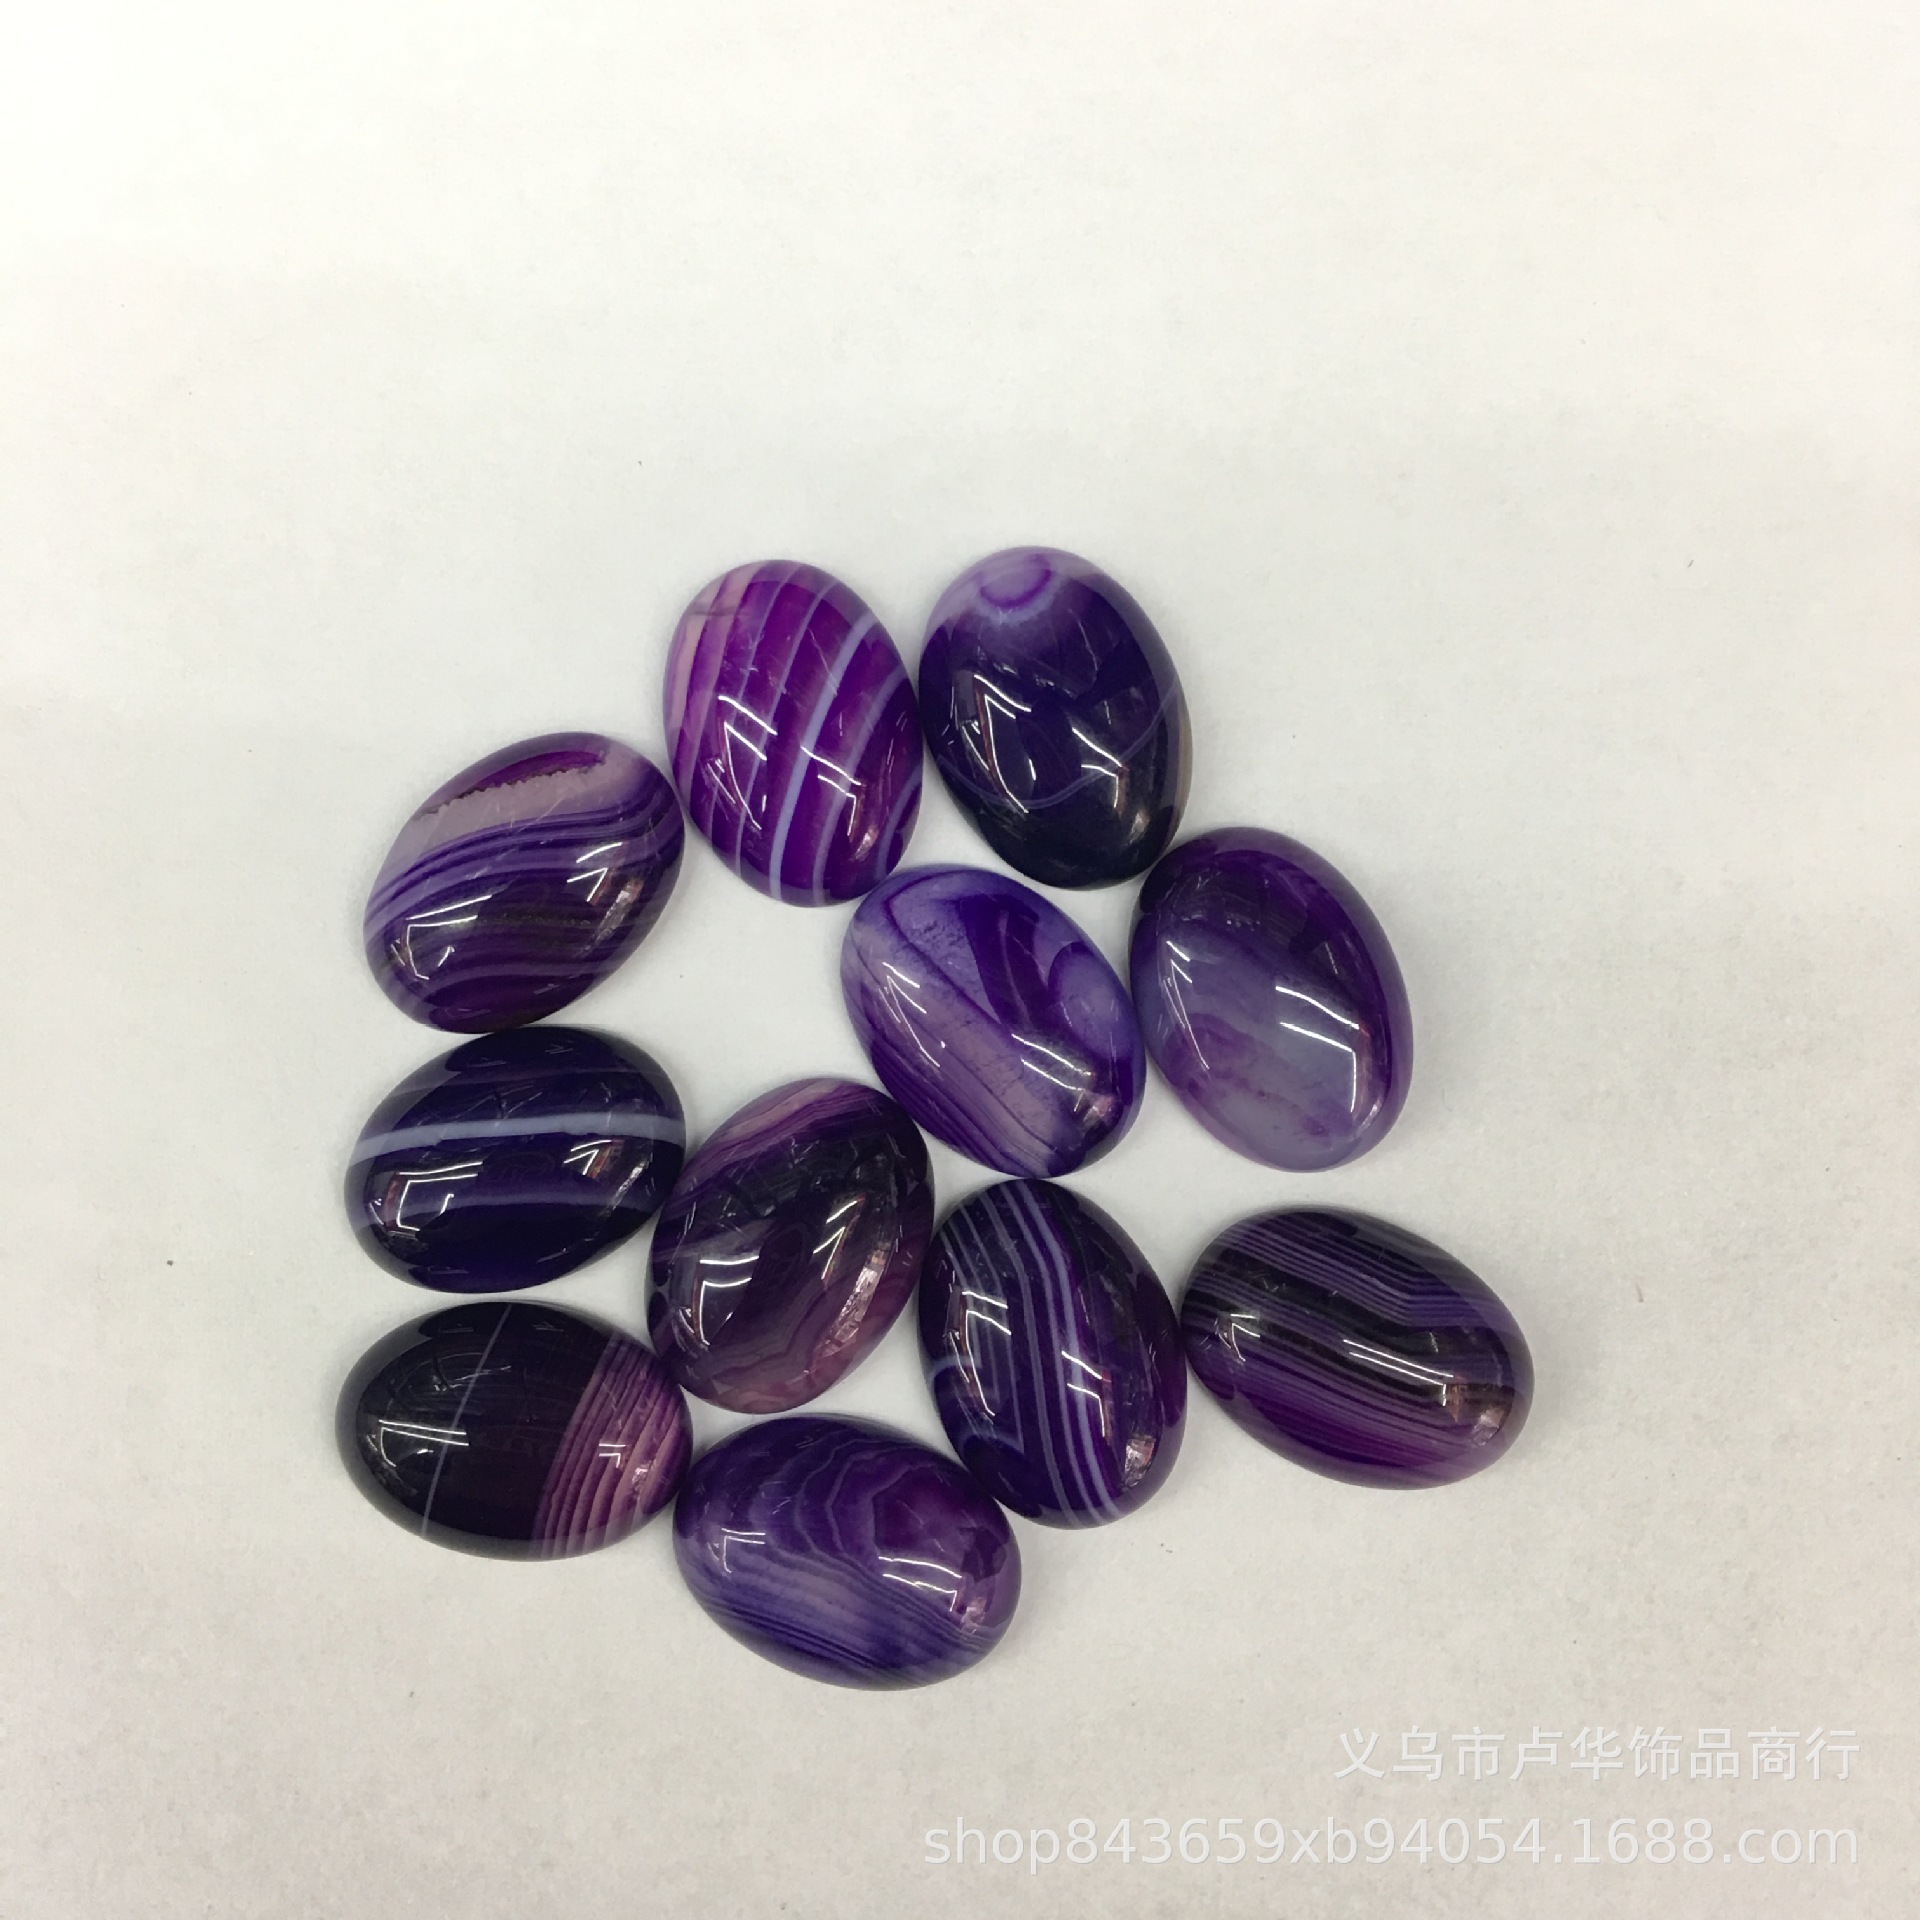 2:Purple striped agate